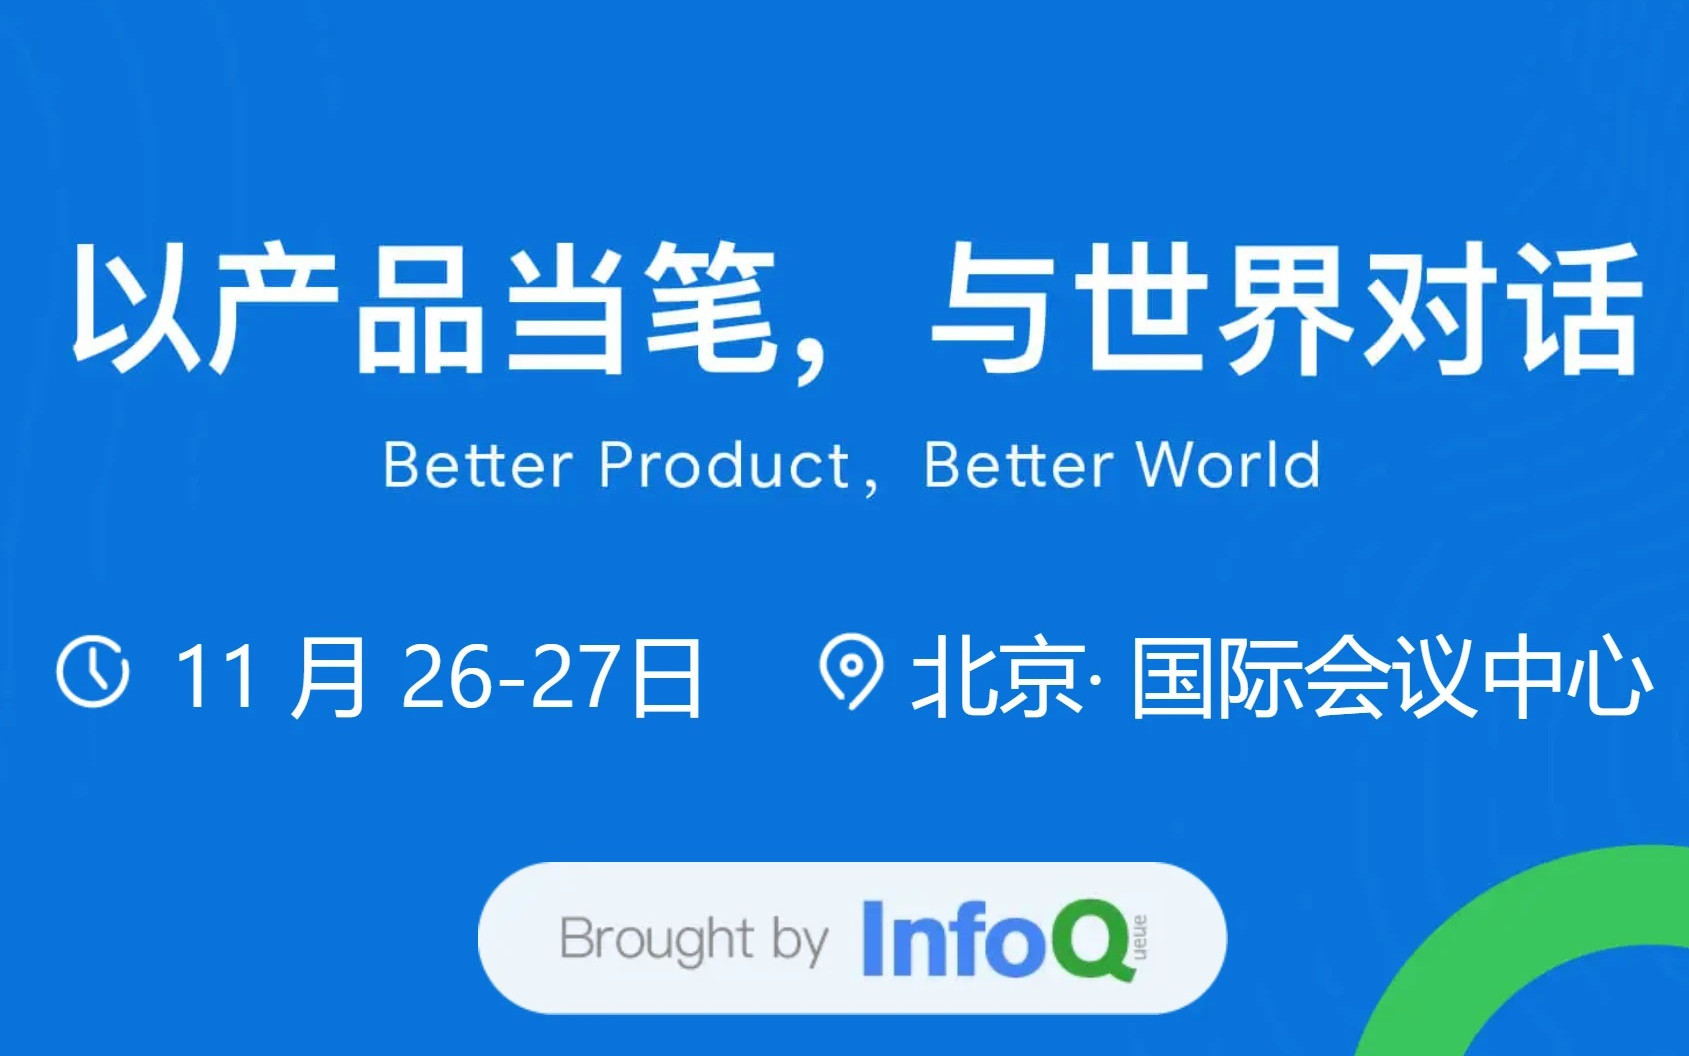 PCon 全球产品创新大会.2021北京站